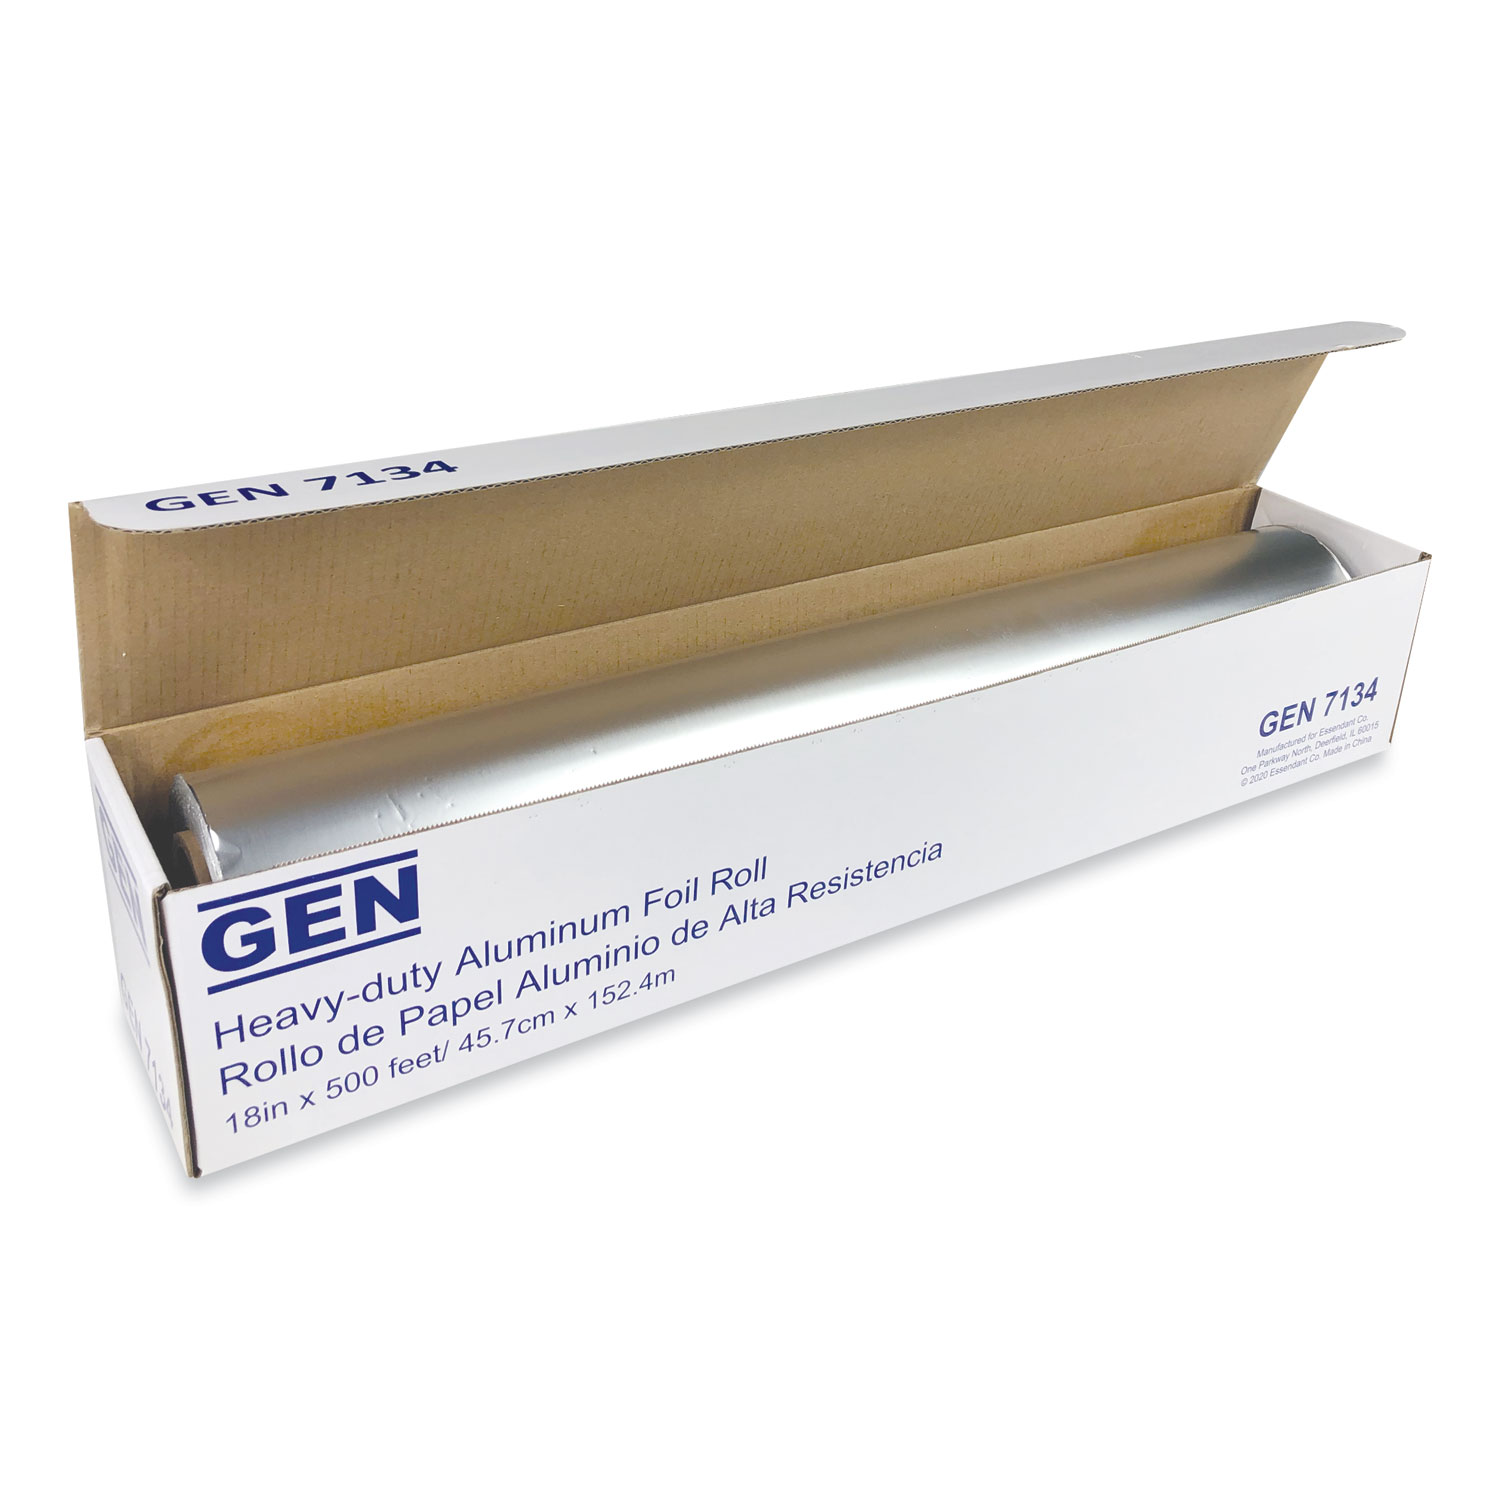  GEN 7134CT Heavy-Duty Aluminum Foil Roll, 18 x 500 ft, 4/Carton (GEN7134CT) 